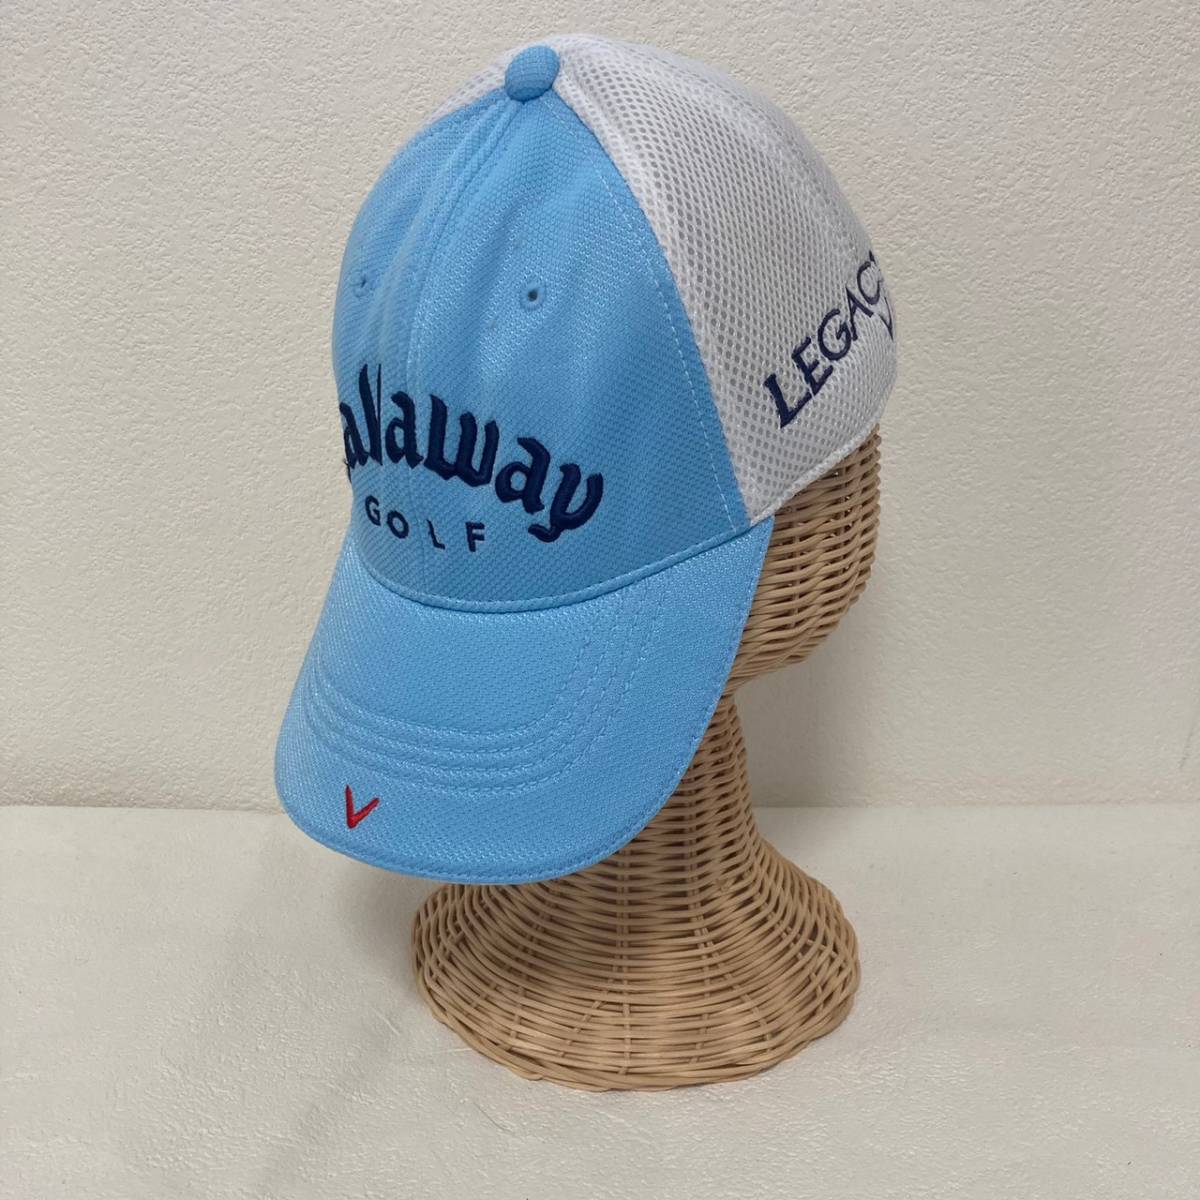 ◆お洒落な逸品◆Callaway/キャロウェイ キャップ 帽子 ゴルフ ブルー 水色 メンズ F ON3669_画像1